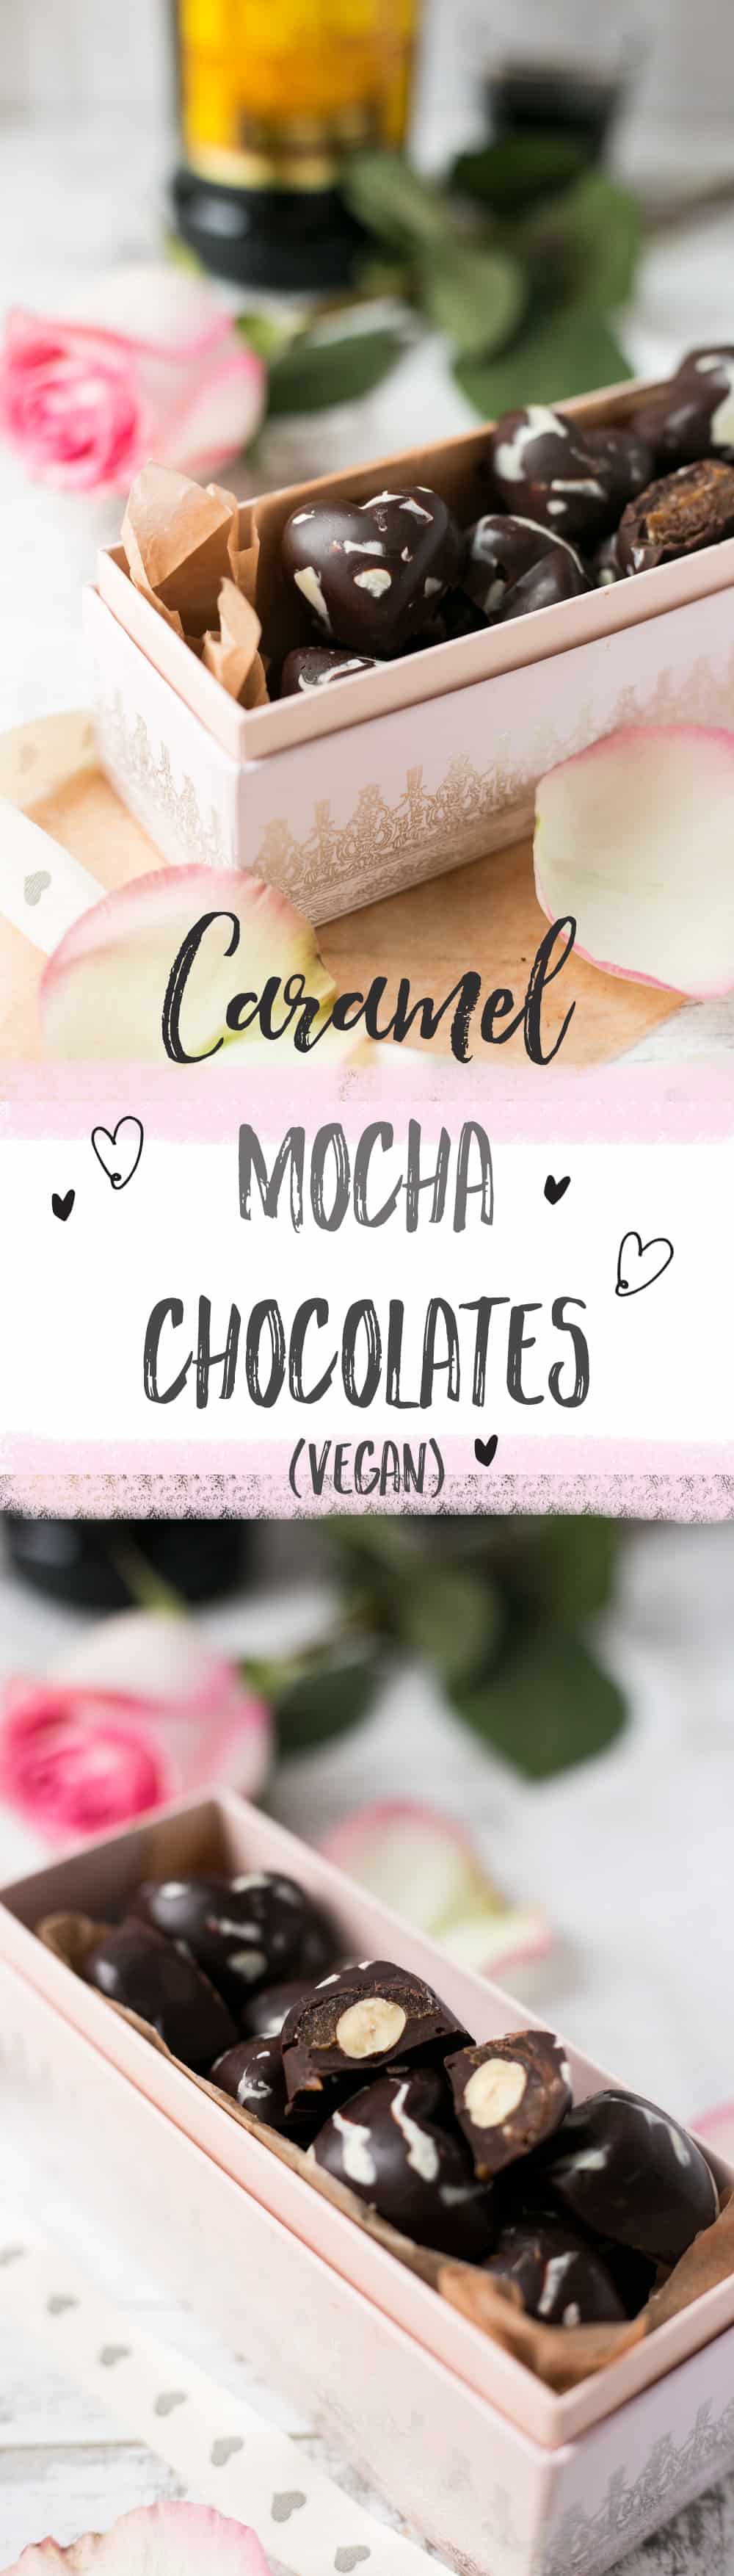 Caramel Mocha Chocolates. Perfect gift for Valentine's Day! | via @annabanana.co